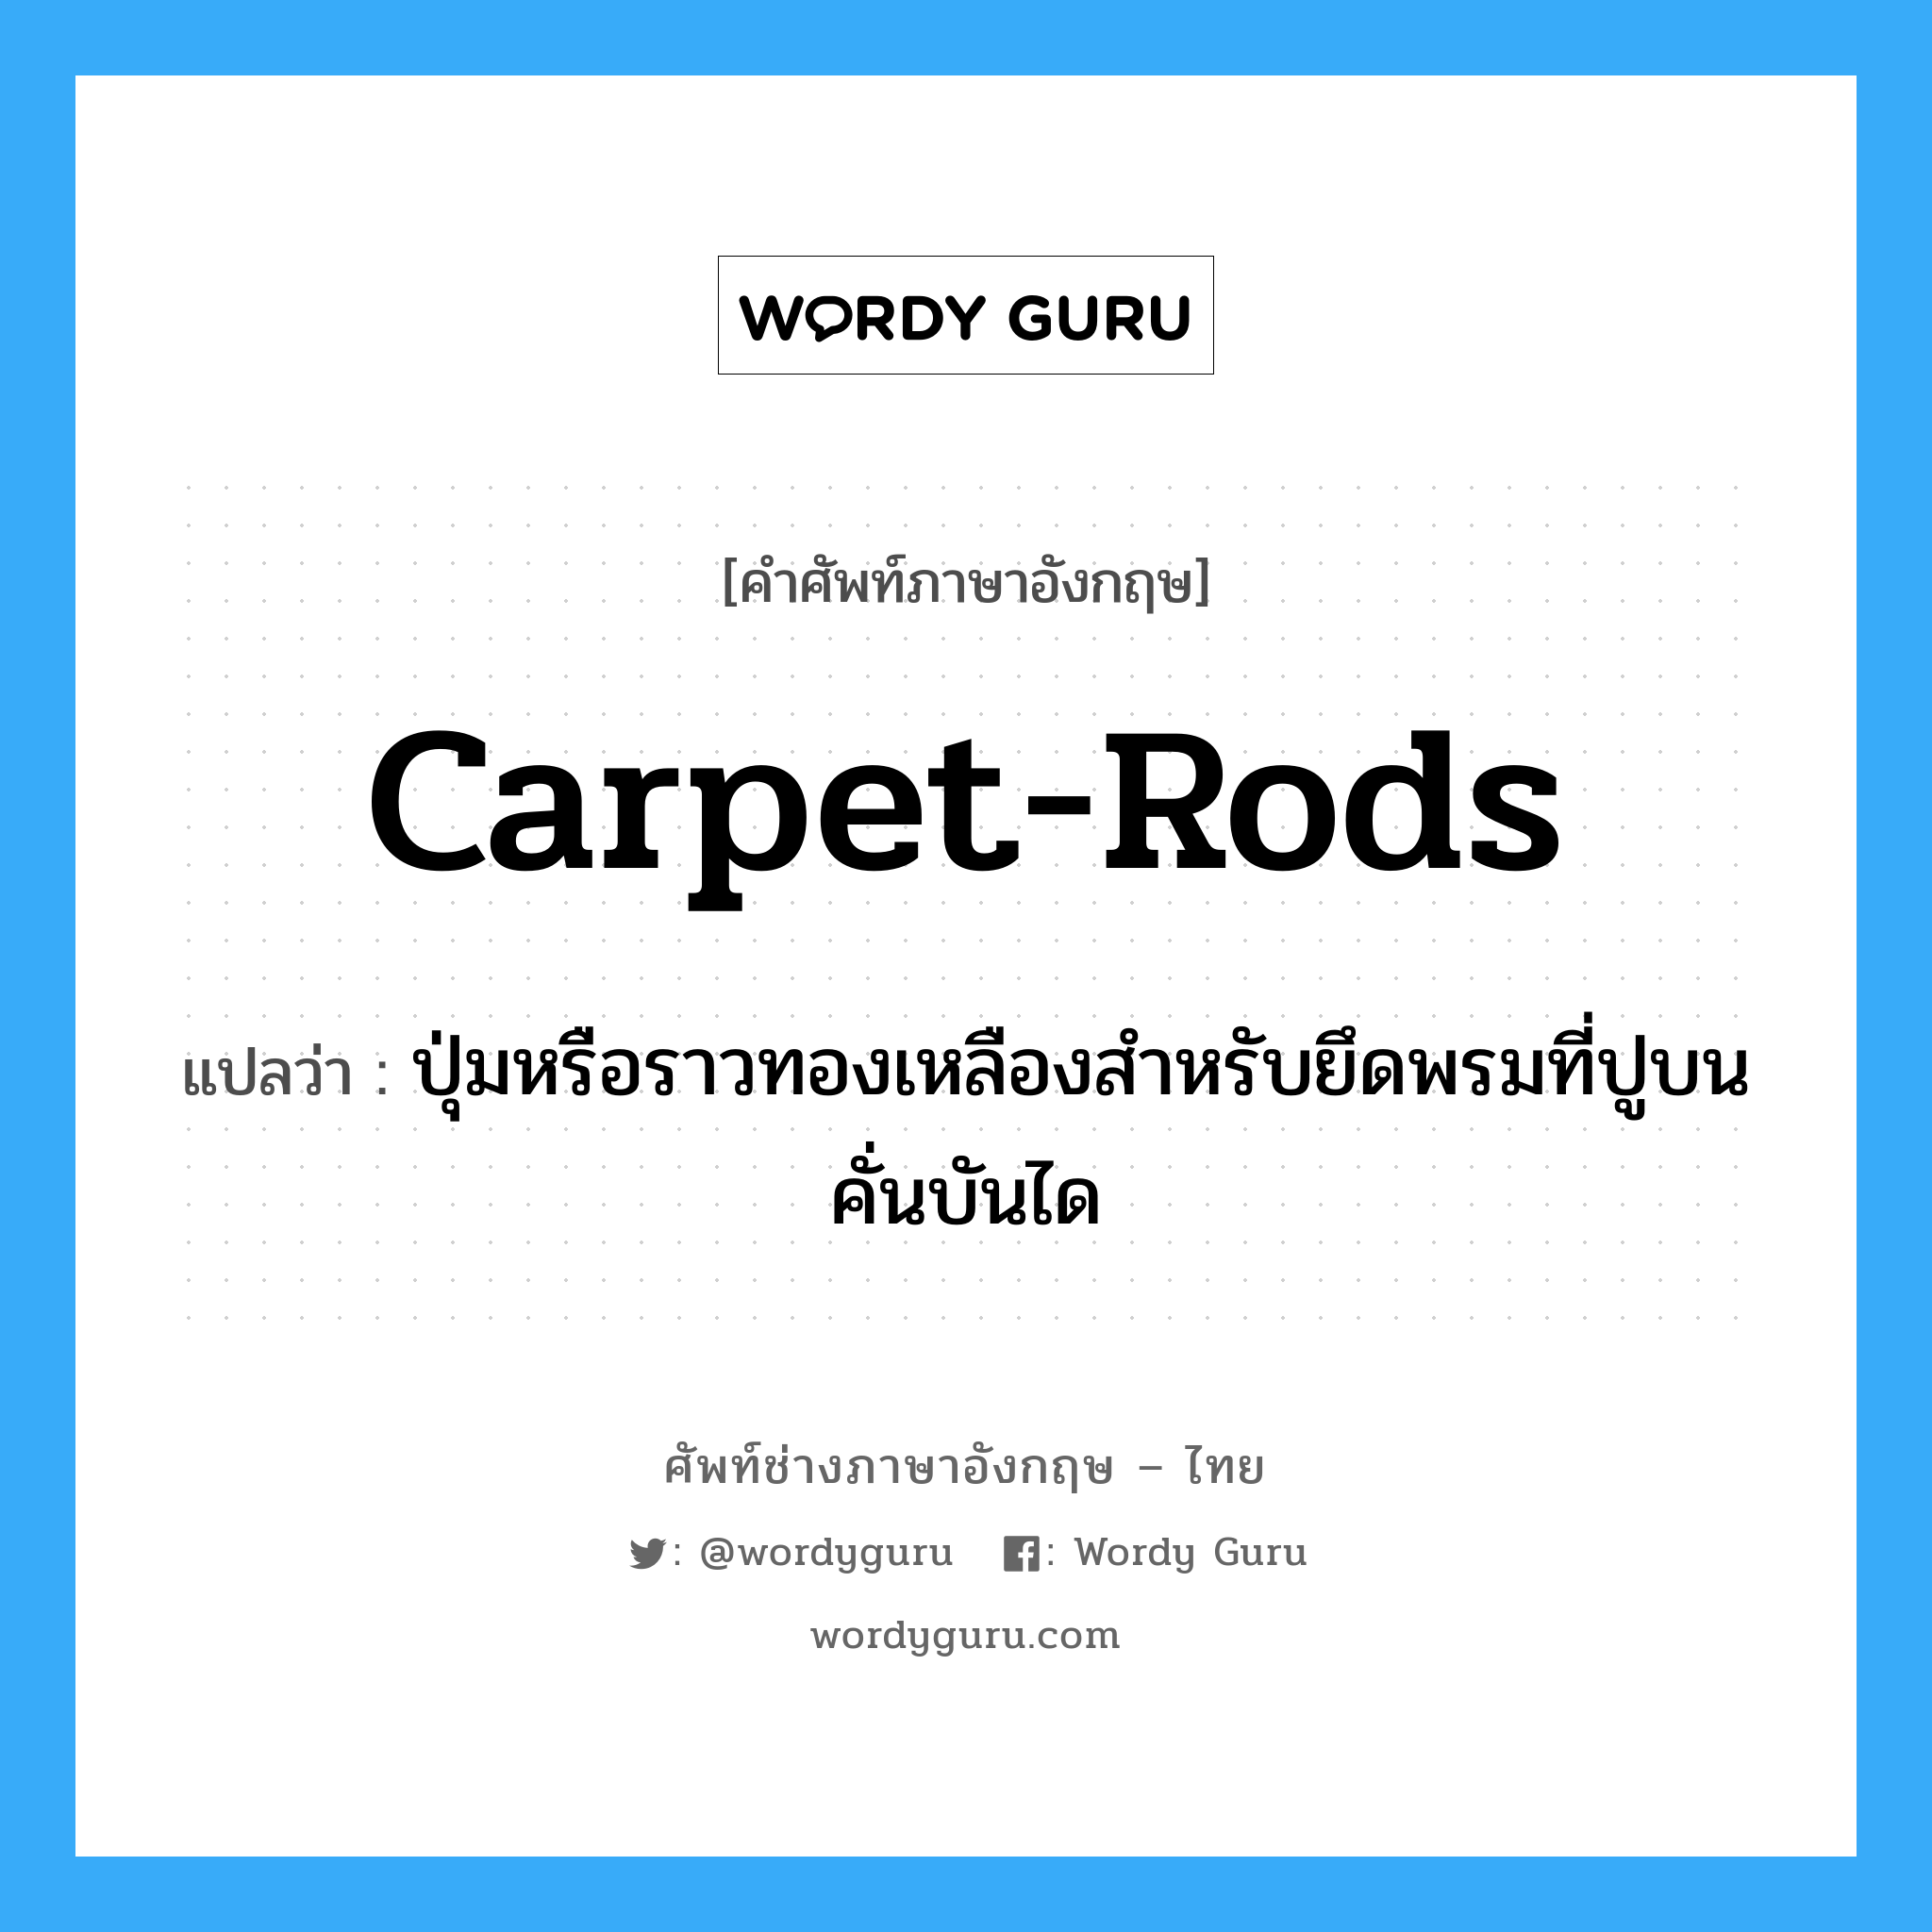 carpet-rods แปลว่า?, คำศัพท์ช่างภาษาอังกฤษ - ไทย carpet-rods คำศัพท์ภาษาอังกฤษ carpet-rods แปลว่า ปุ่มหรือราวทองเหลืองสำหรับยึดพรมที่ปูบนคั่นบันได